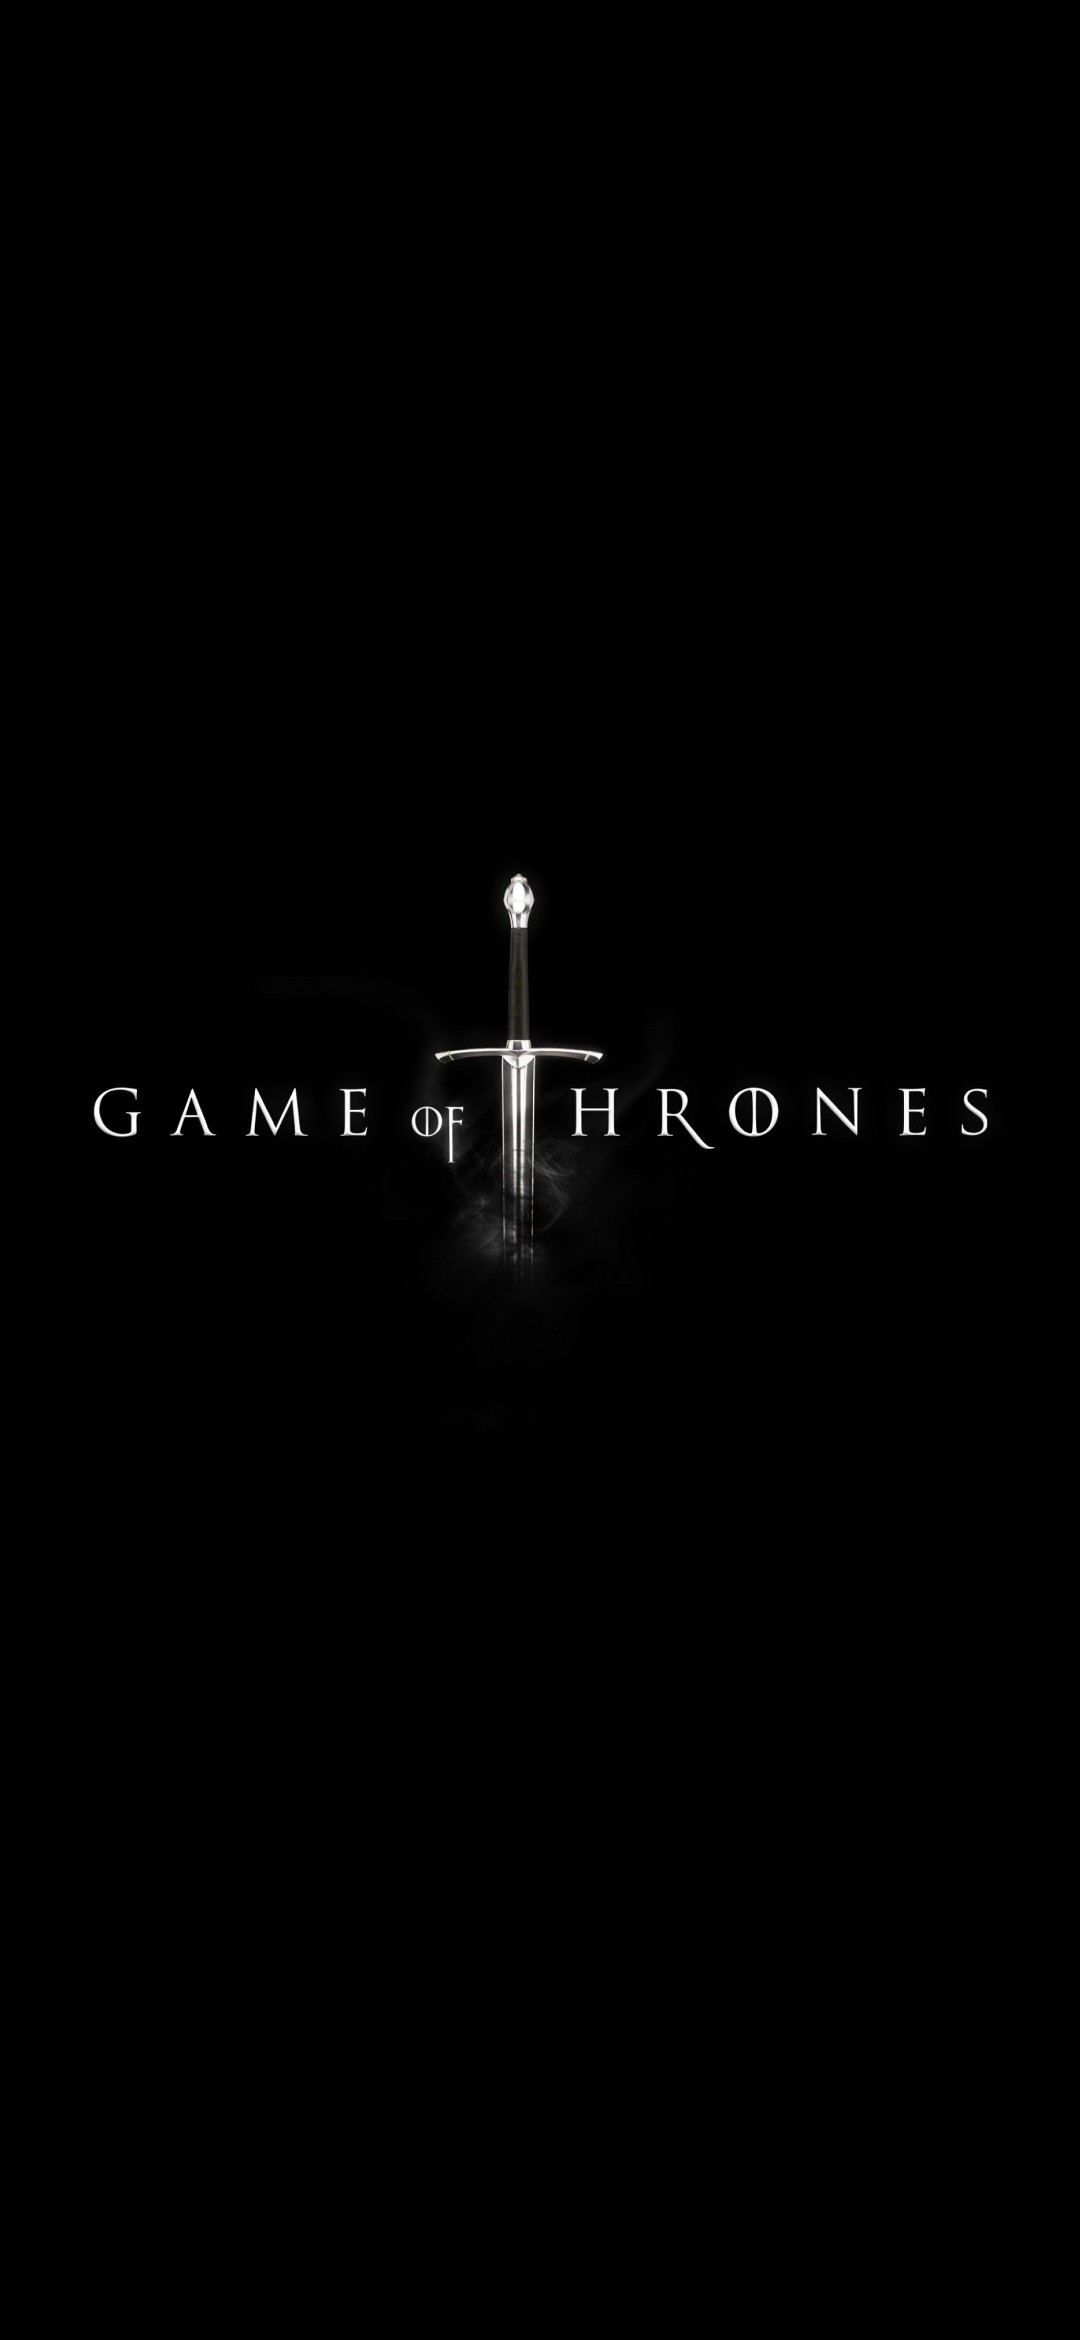 かっこいいgame Of Thronesのロゴ Redmagic 5 Android 壁紙 待ち受け スマラン